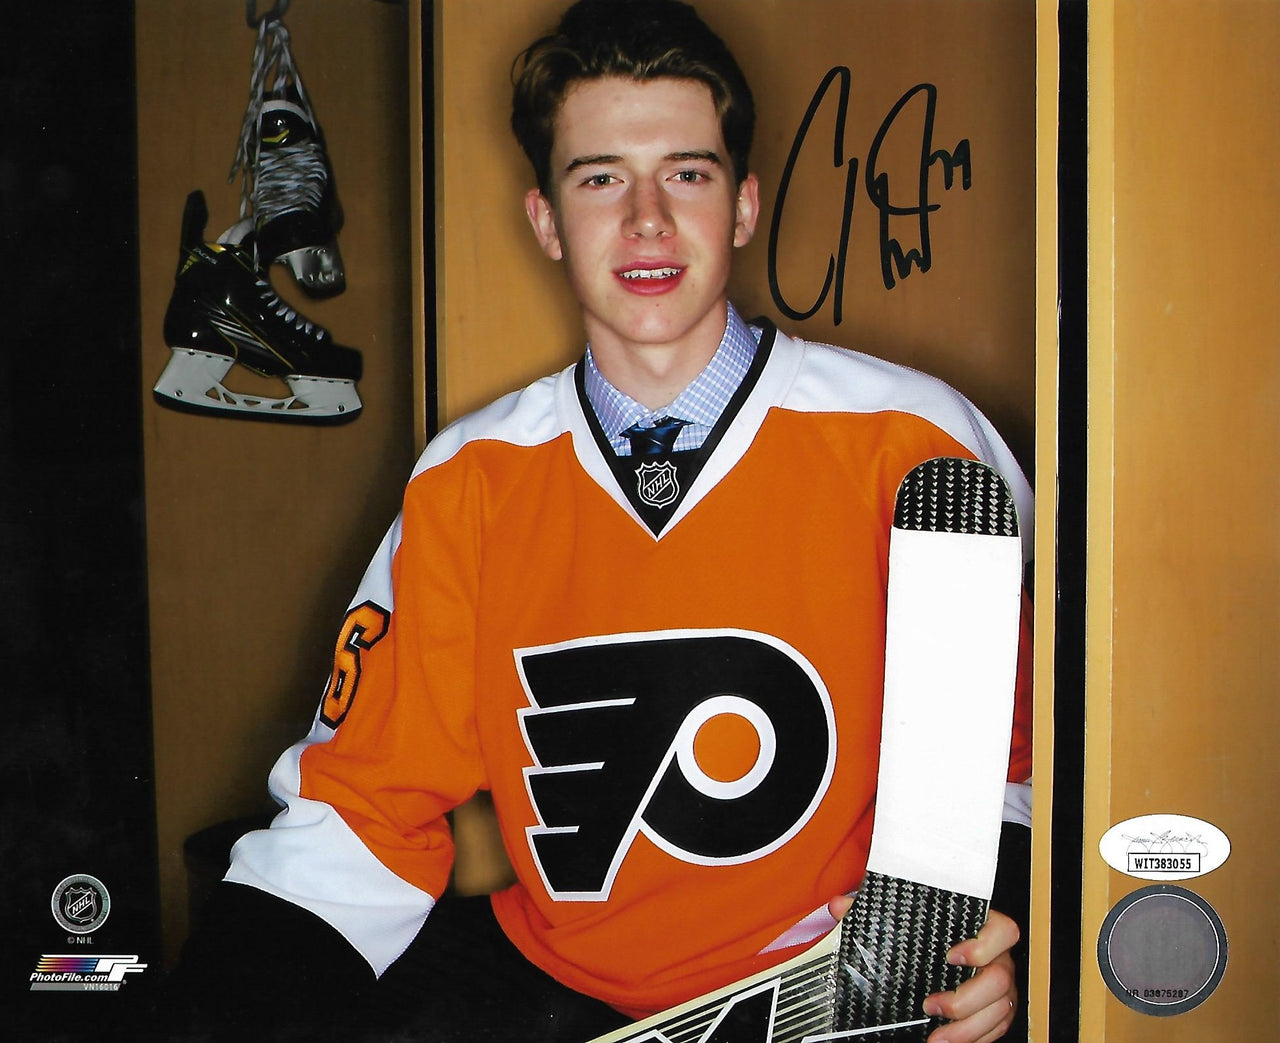 Carter Hart Philadelphia Flyers Autographed Hockey Breakaway